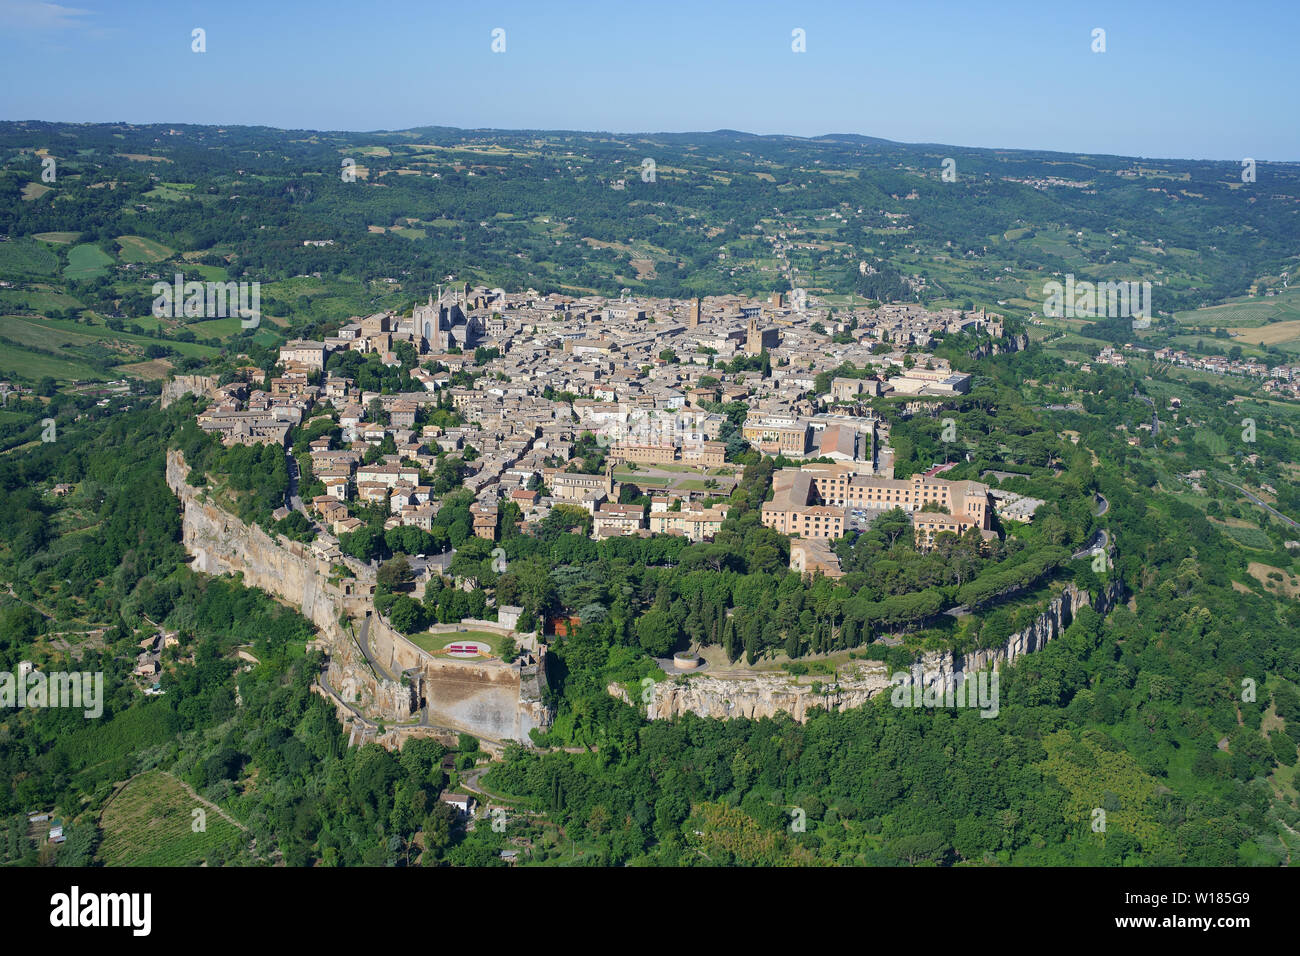 LUFTAUFNAHME. Mittelalterliche Stadt auf einer mesa aus vulkanischem Gestein gebaut. Orvieto, Provinz Terni, Umbrien, Italien. Stockfoto